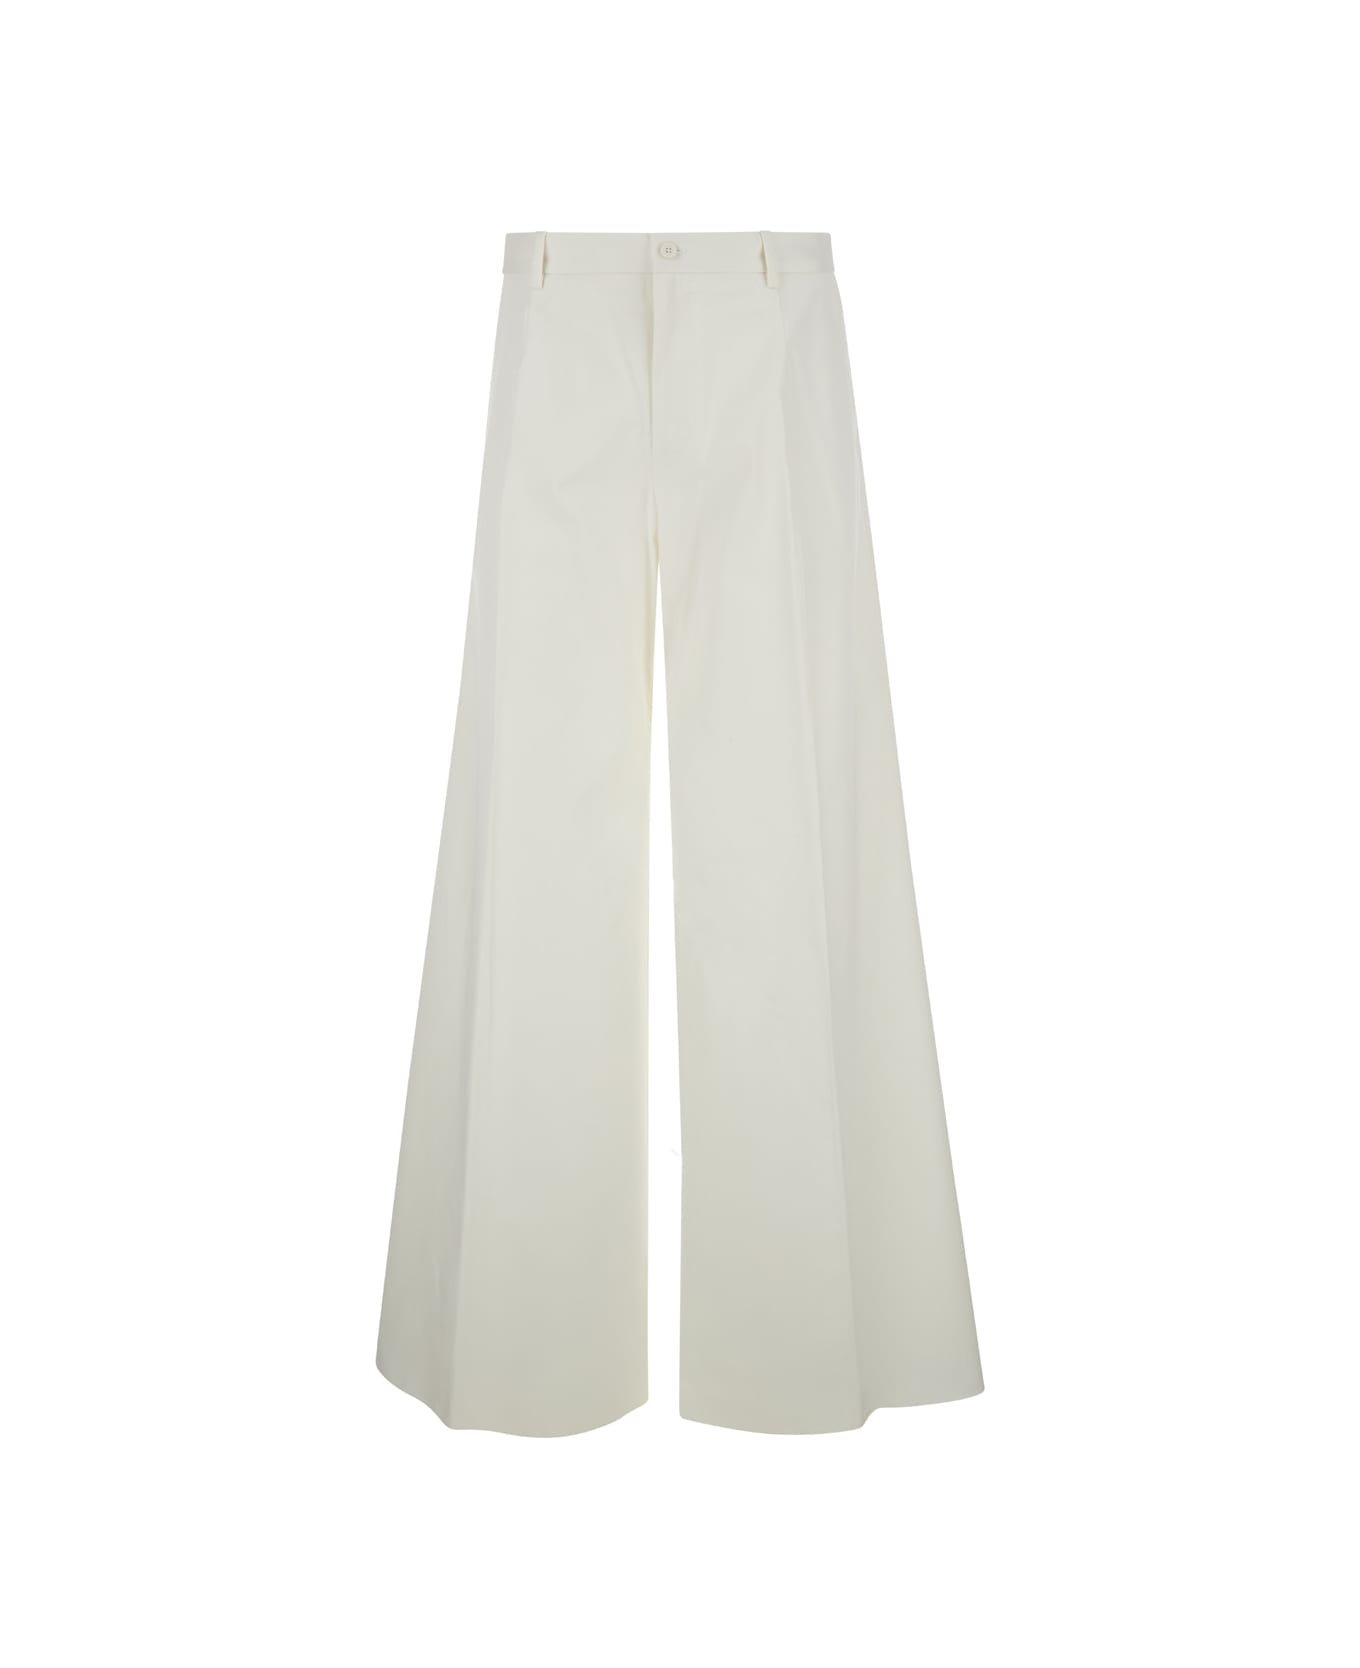 Dolce & Gabbana Look 16/17 Pantalone In Drill Di Cotone - WHITE ボトムス